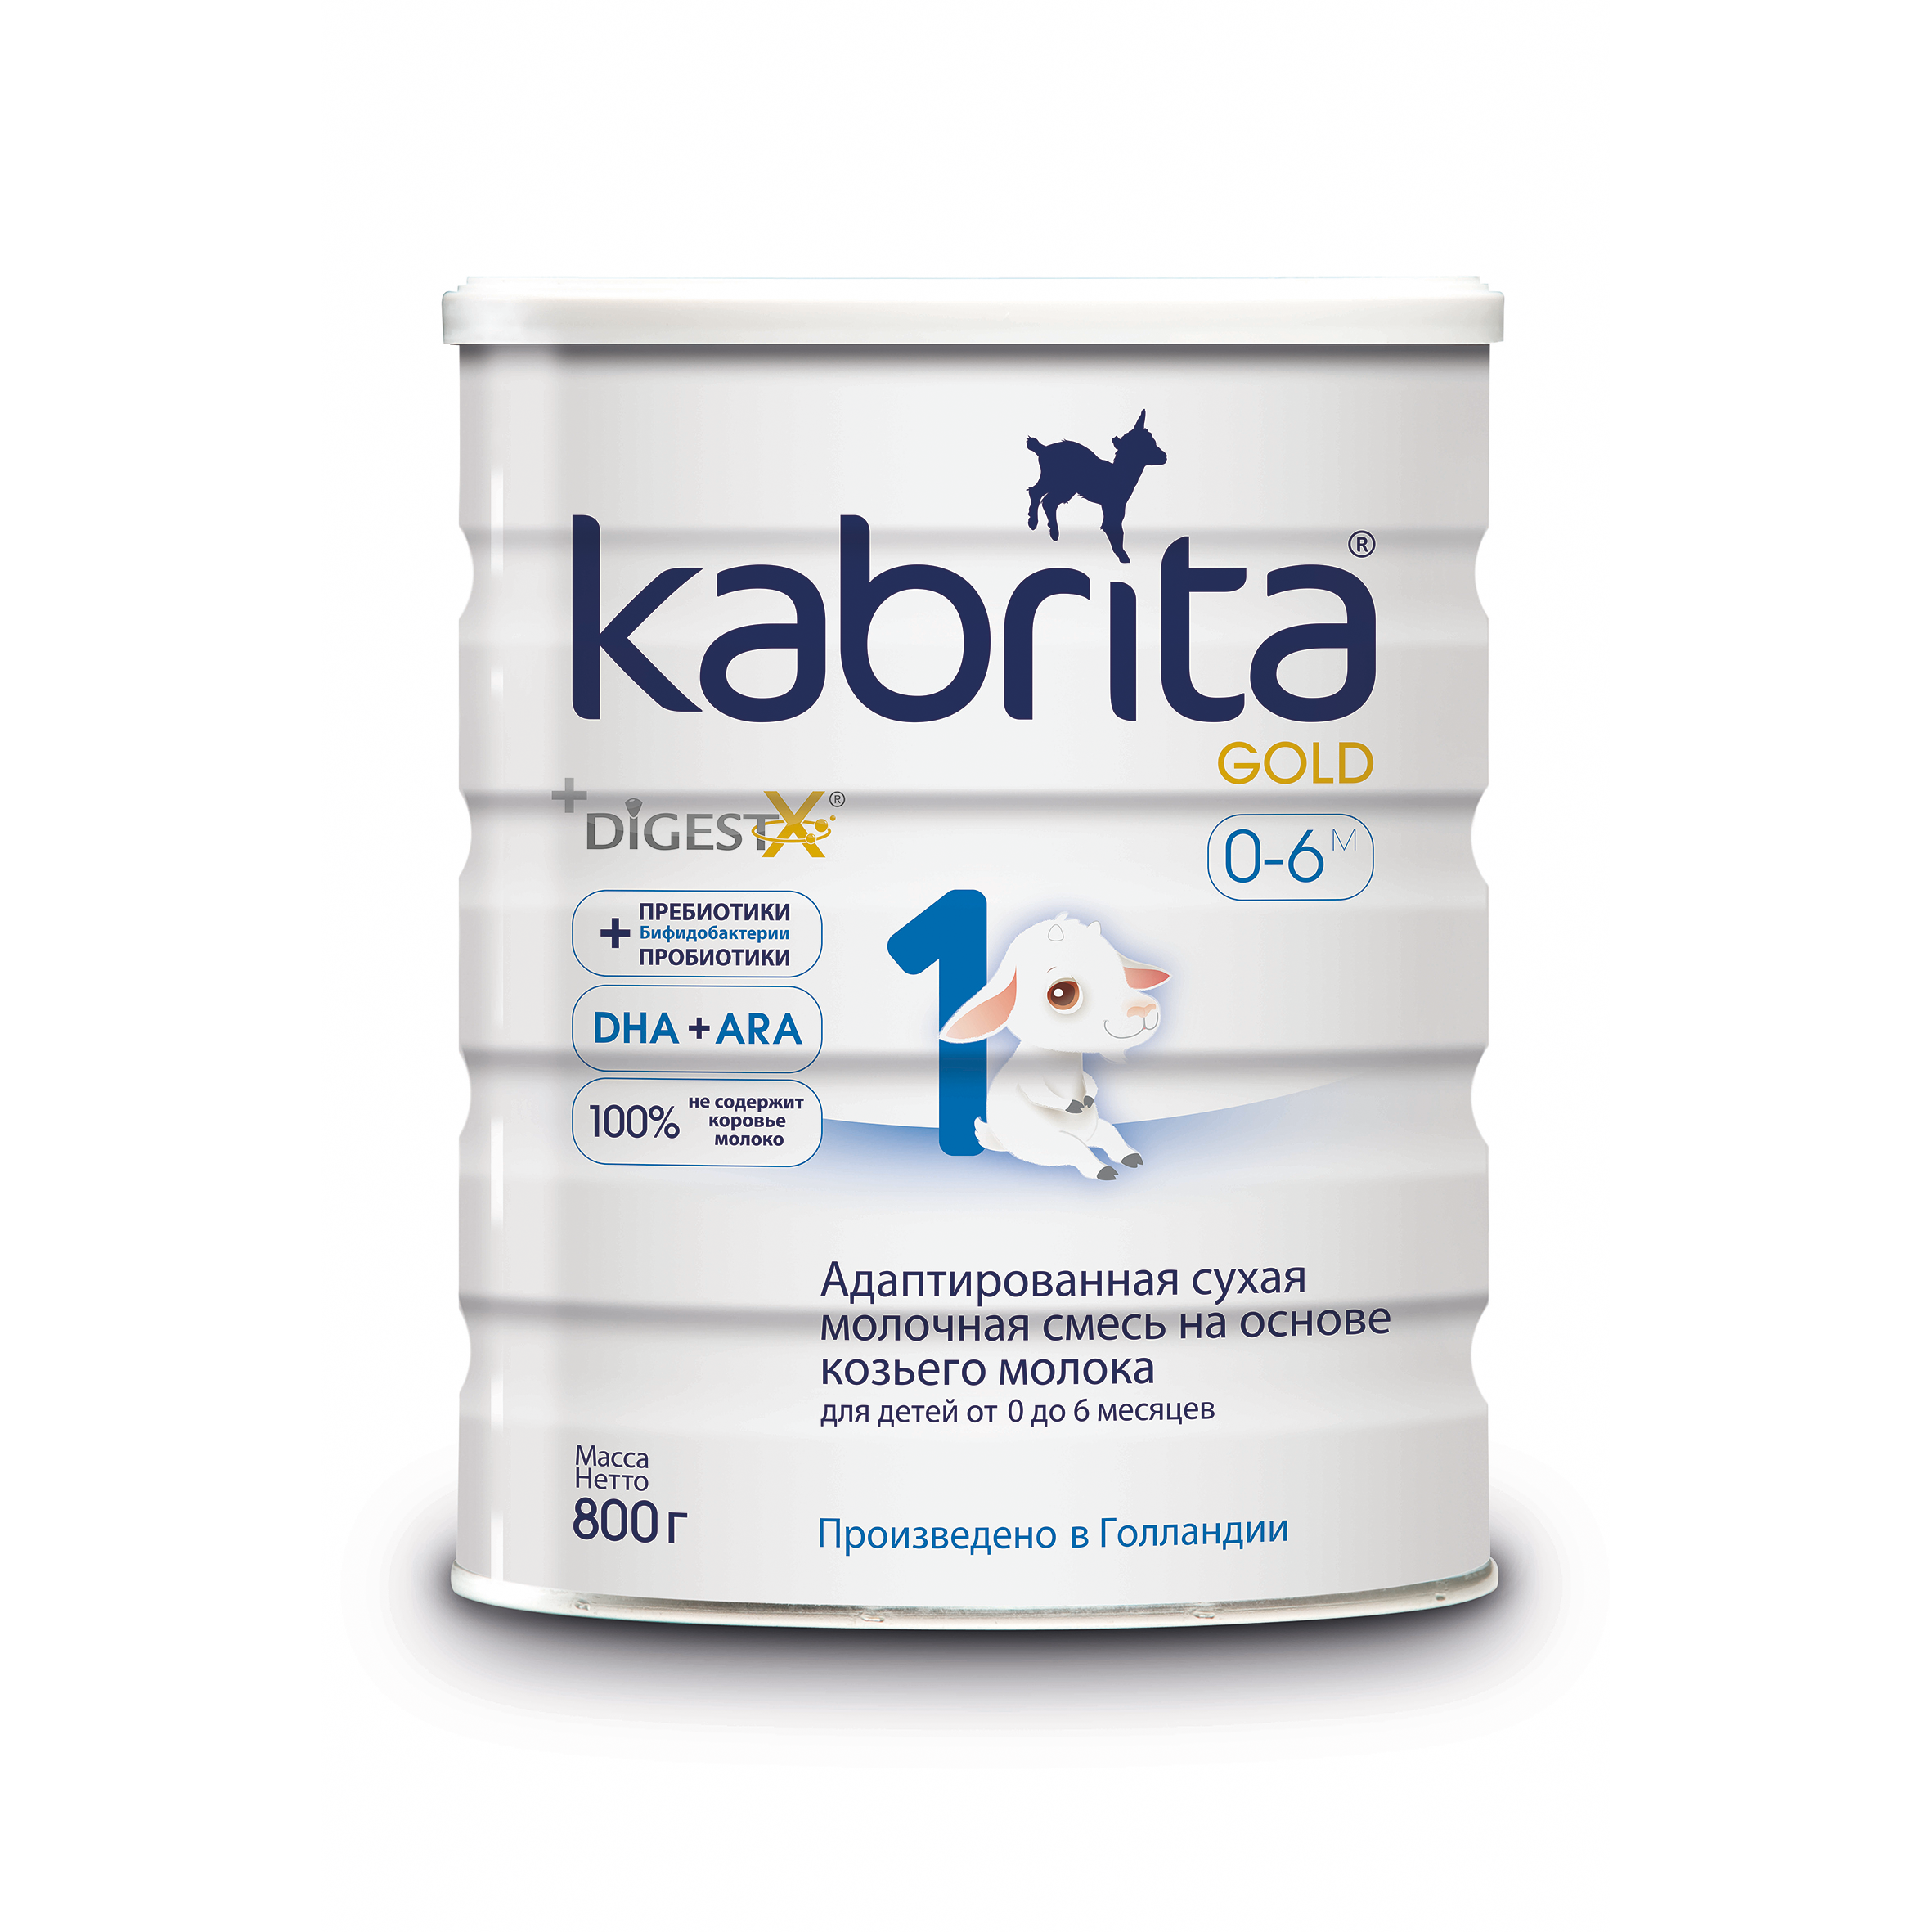 Смесь на основе козьего молока Kabrita Gold от 0 до 6 мес. 800 г адаптированная смесь kabrita 1 gold на основе козьего молока 2х800гр